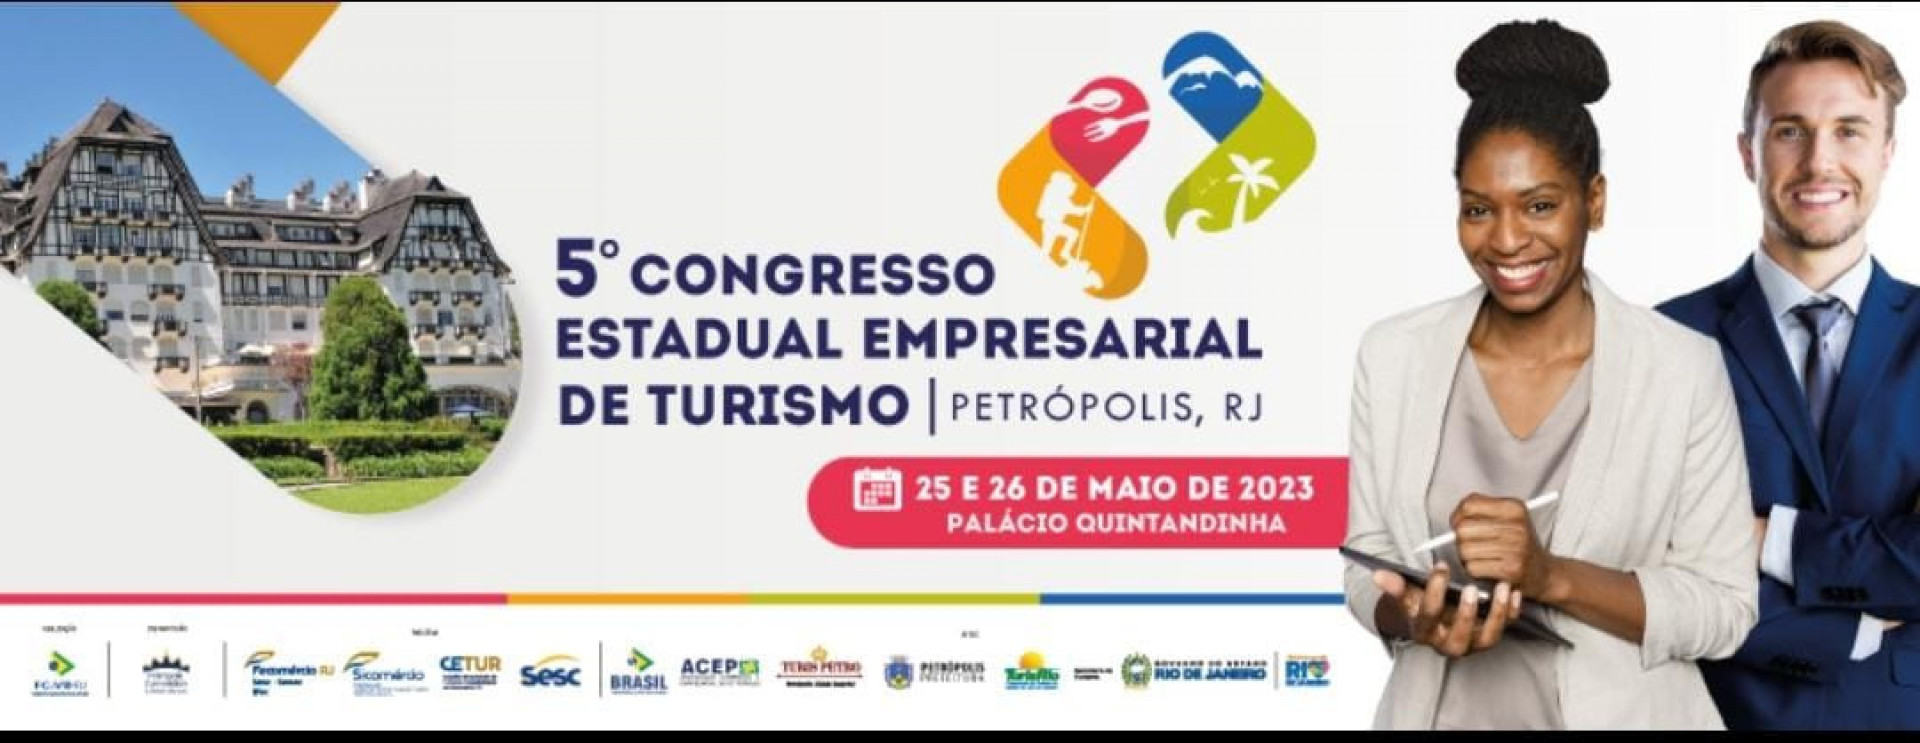 O V Congresso Estadual Empresarial de Turismo do Estado do Rio de Janeiro é realizado pela Federação de Convention & Visitors Bureaux do Estado do Rio de Janeiro (FC&VB-RJ)